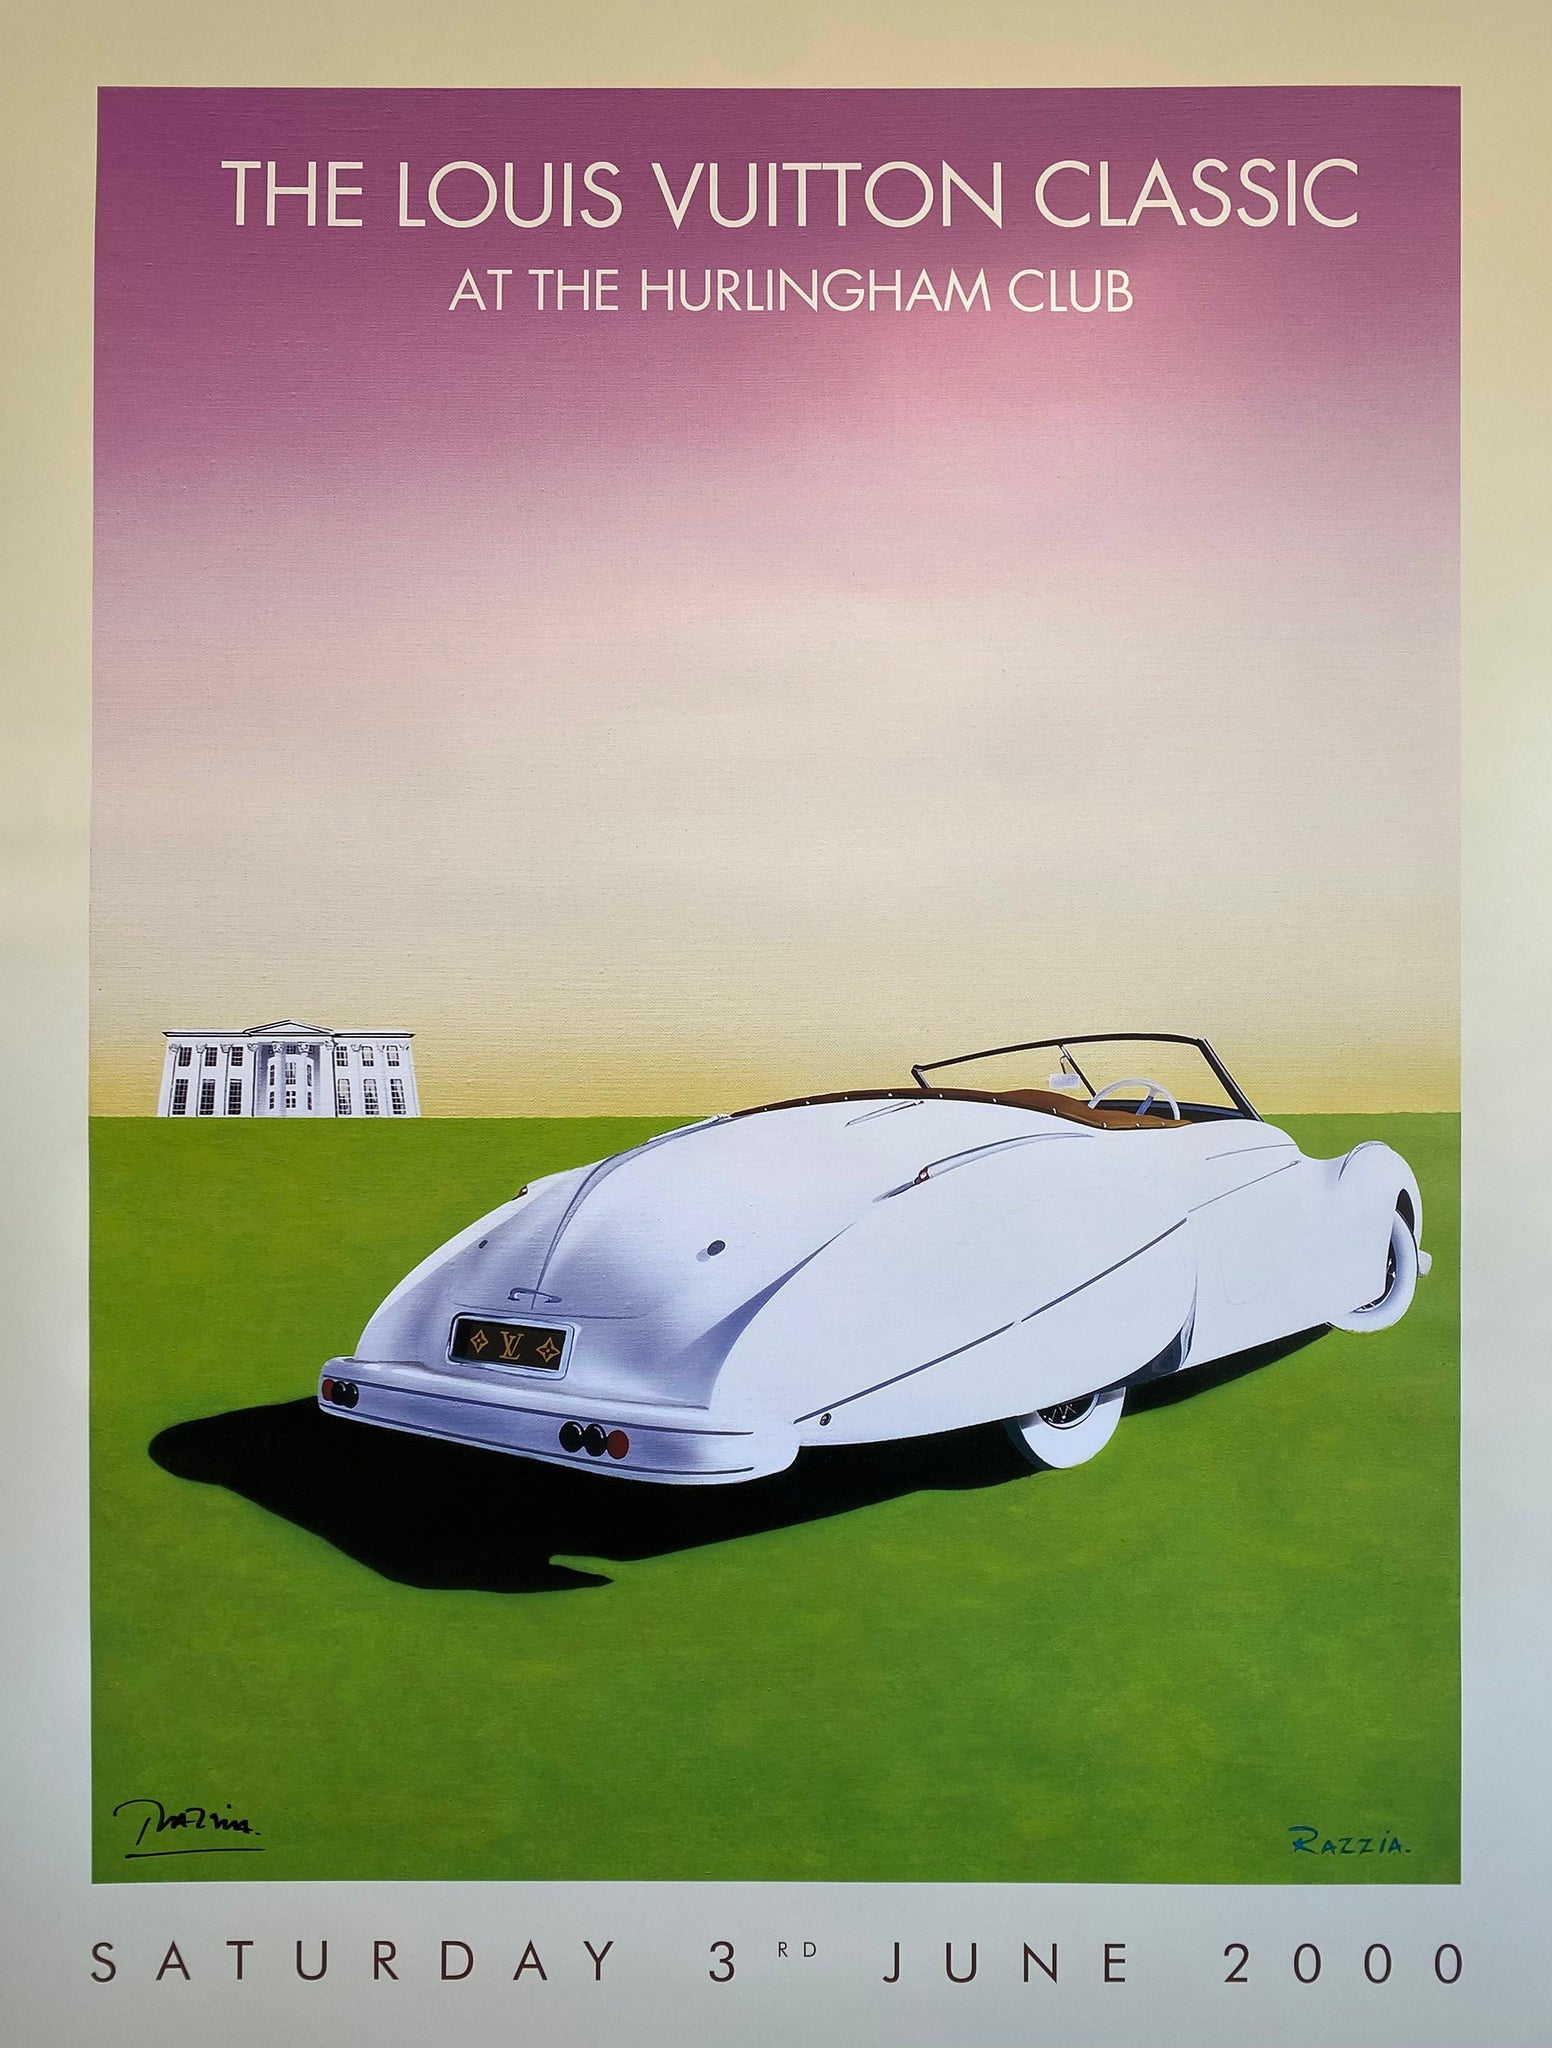 Affiche The Louis Vuitton Classic at the Hurlingham Club Par Razzia, 2000